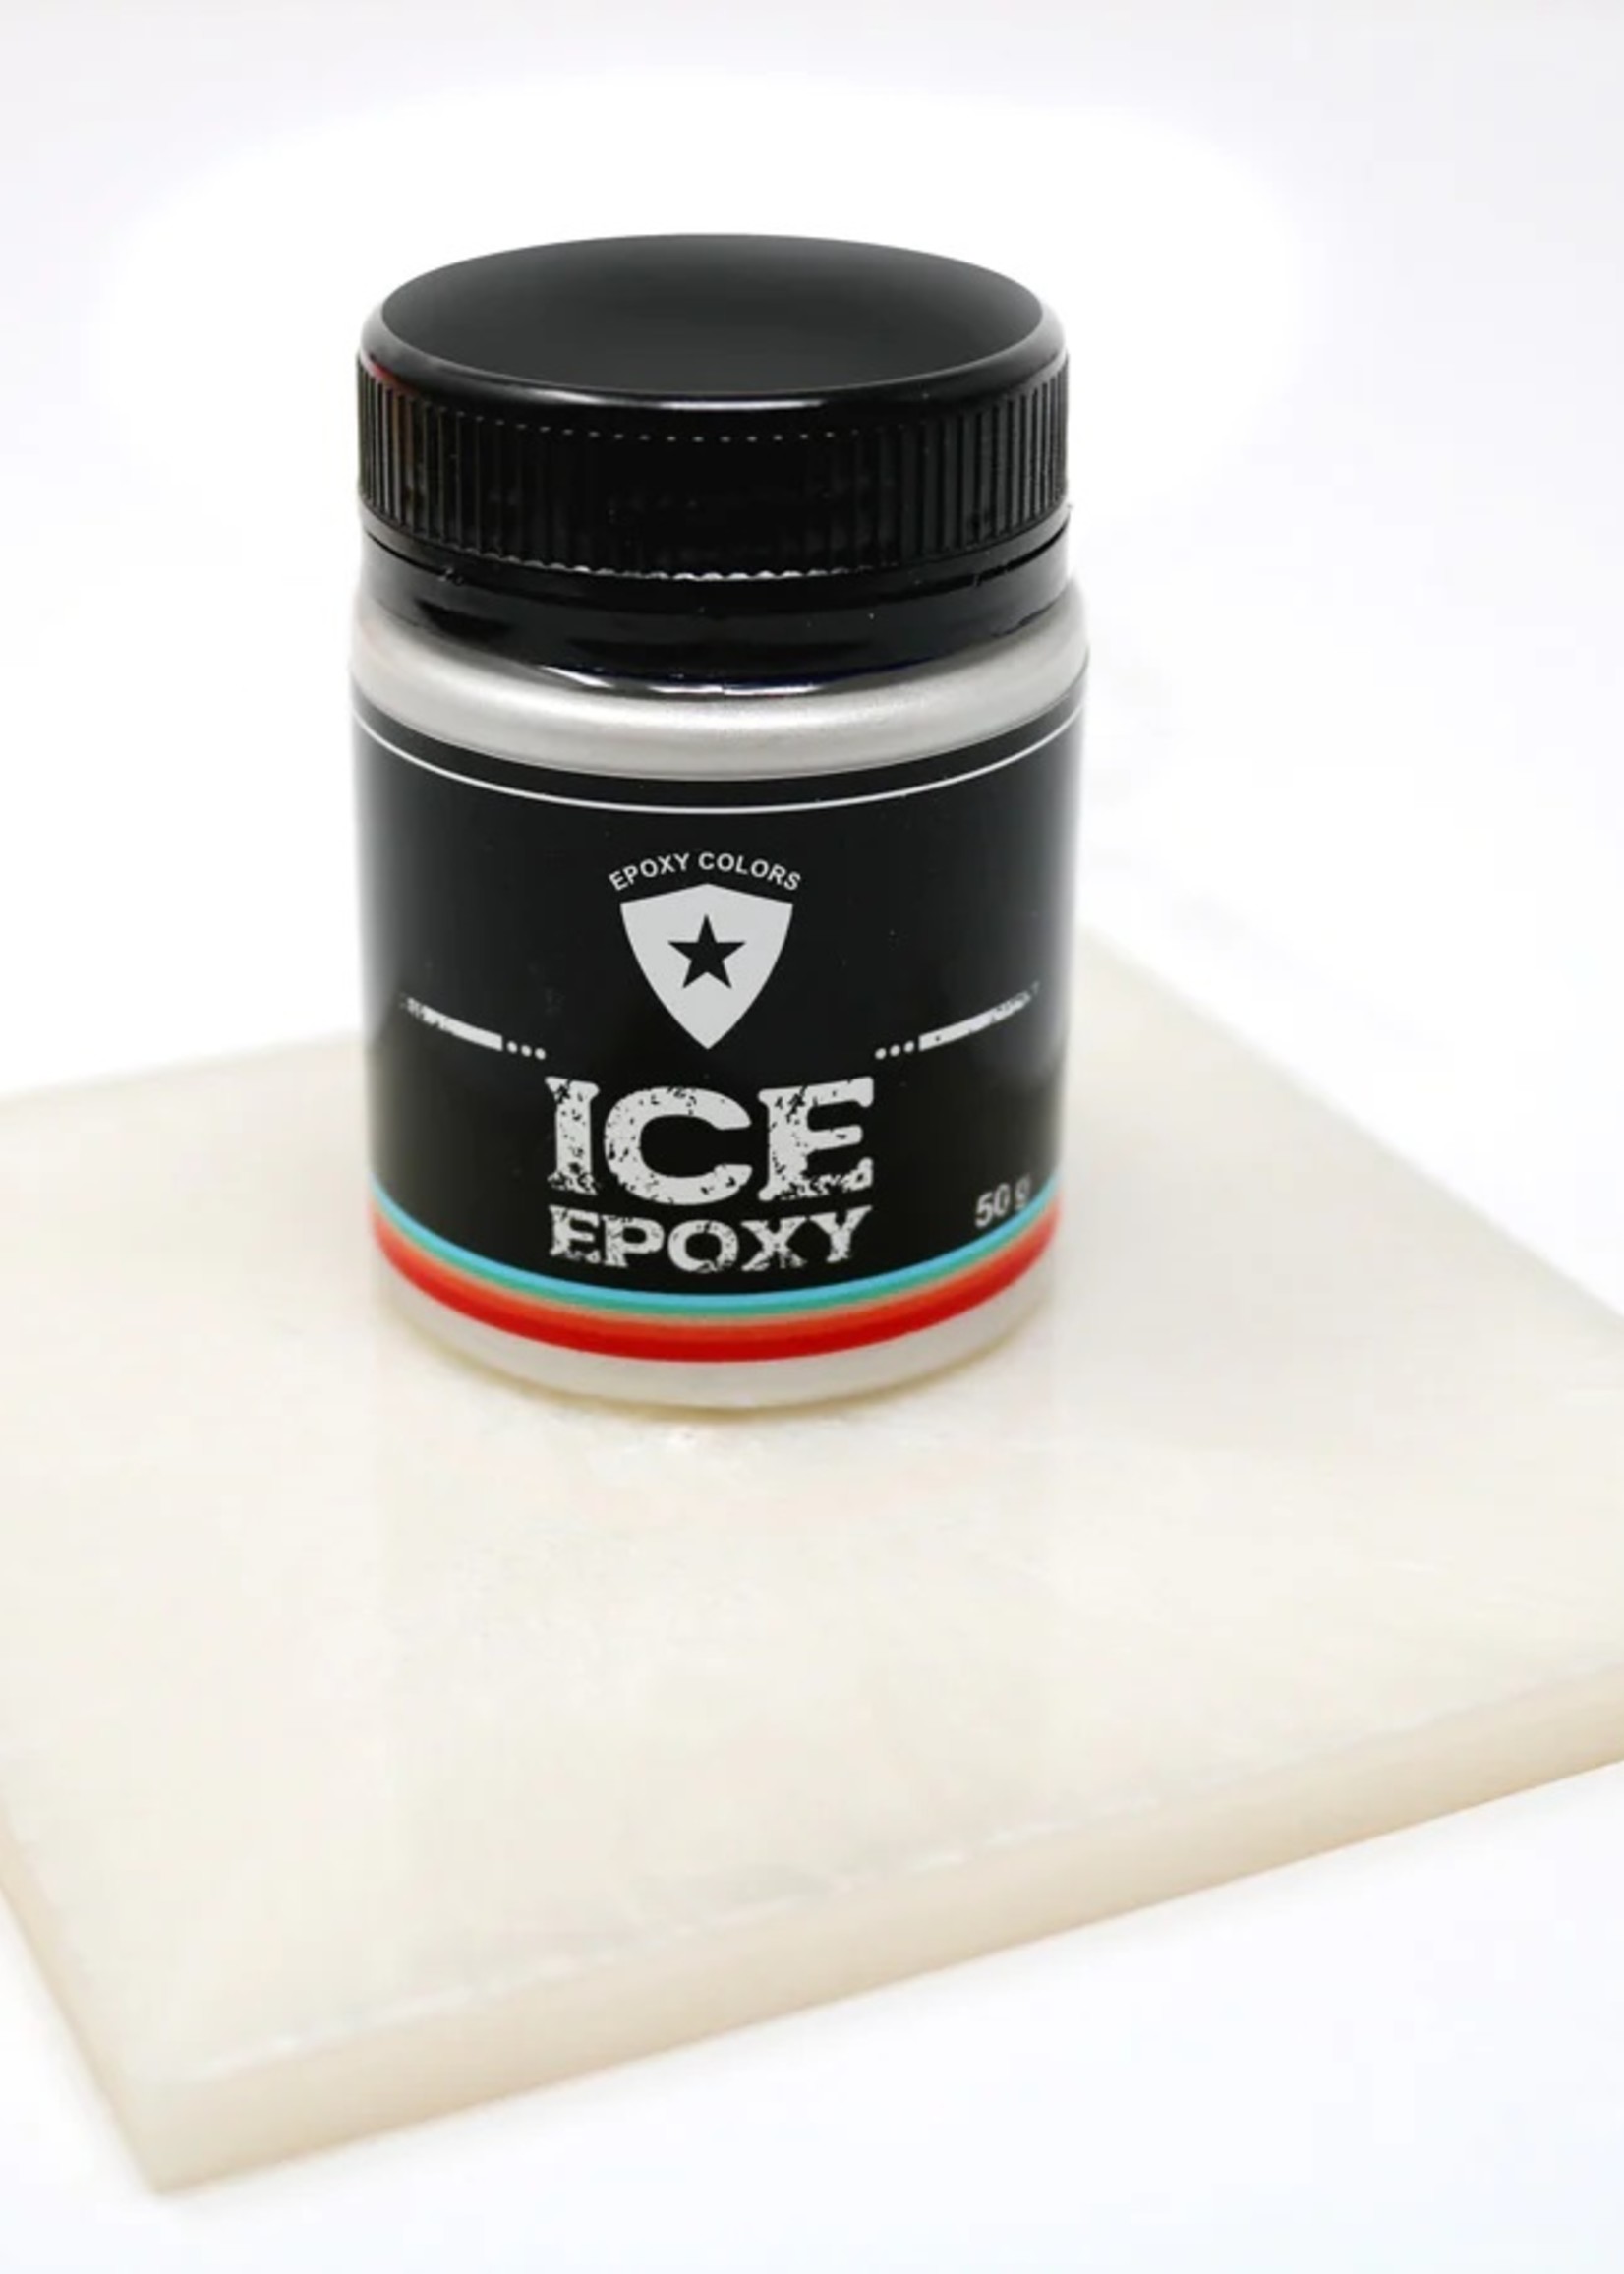 Ice Epoxy Ice Epoxy pigment 50g container